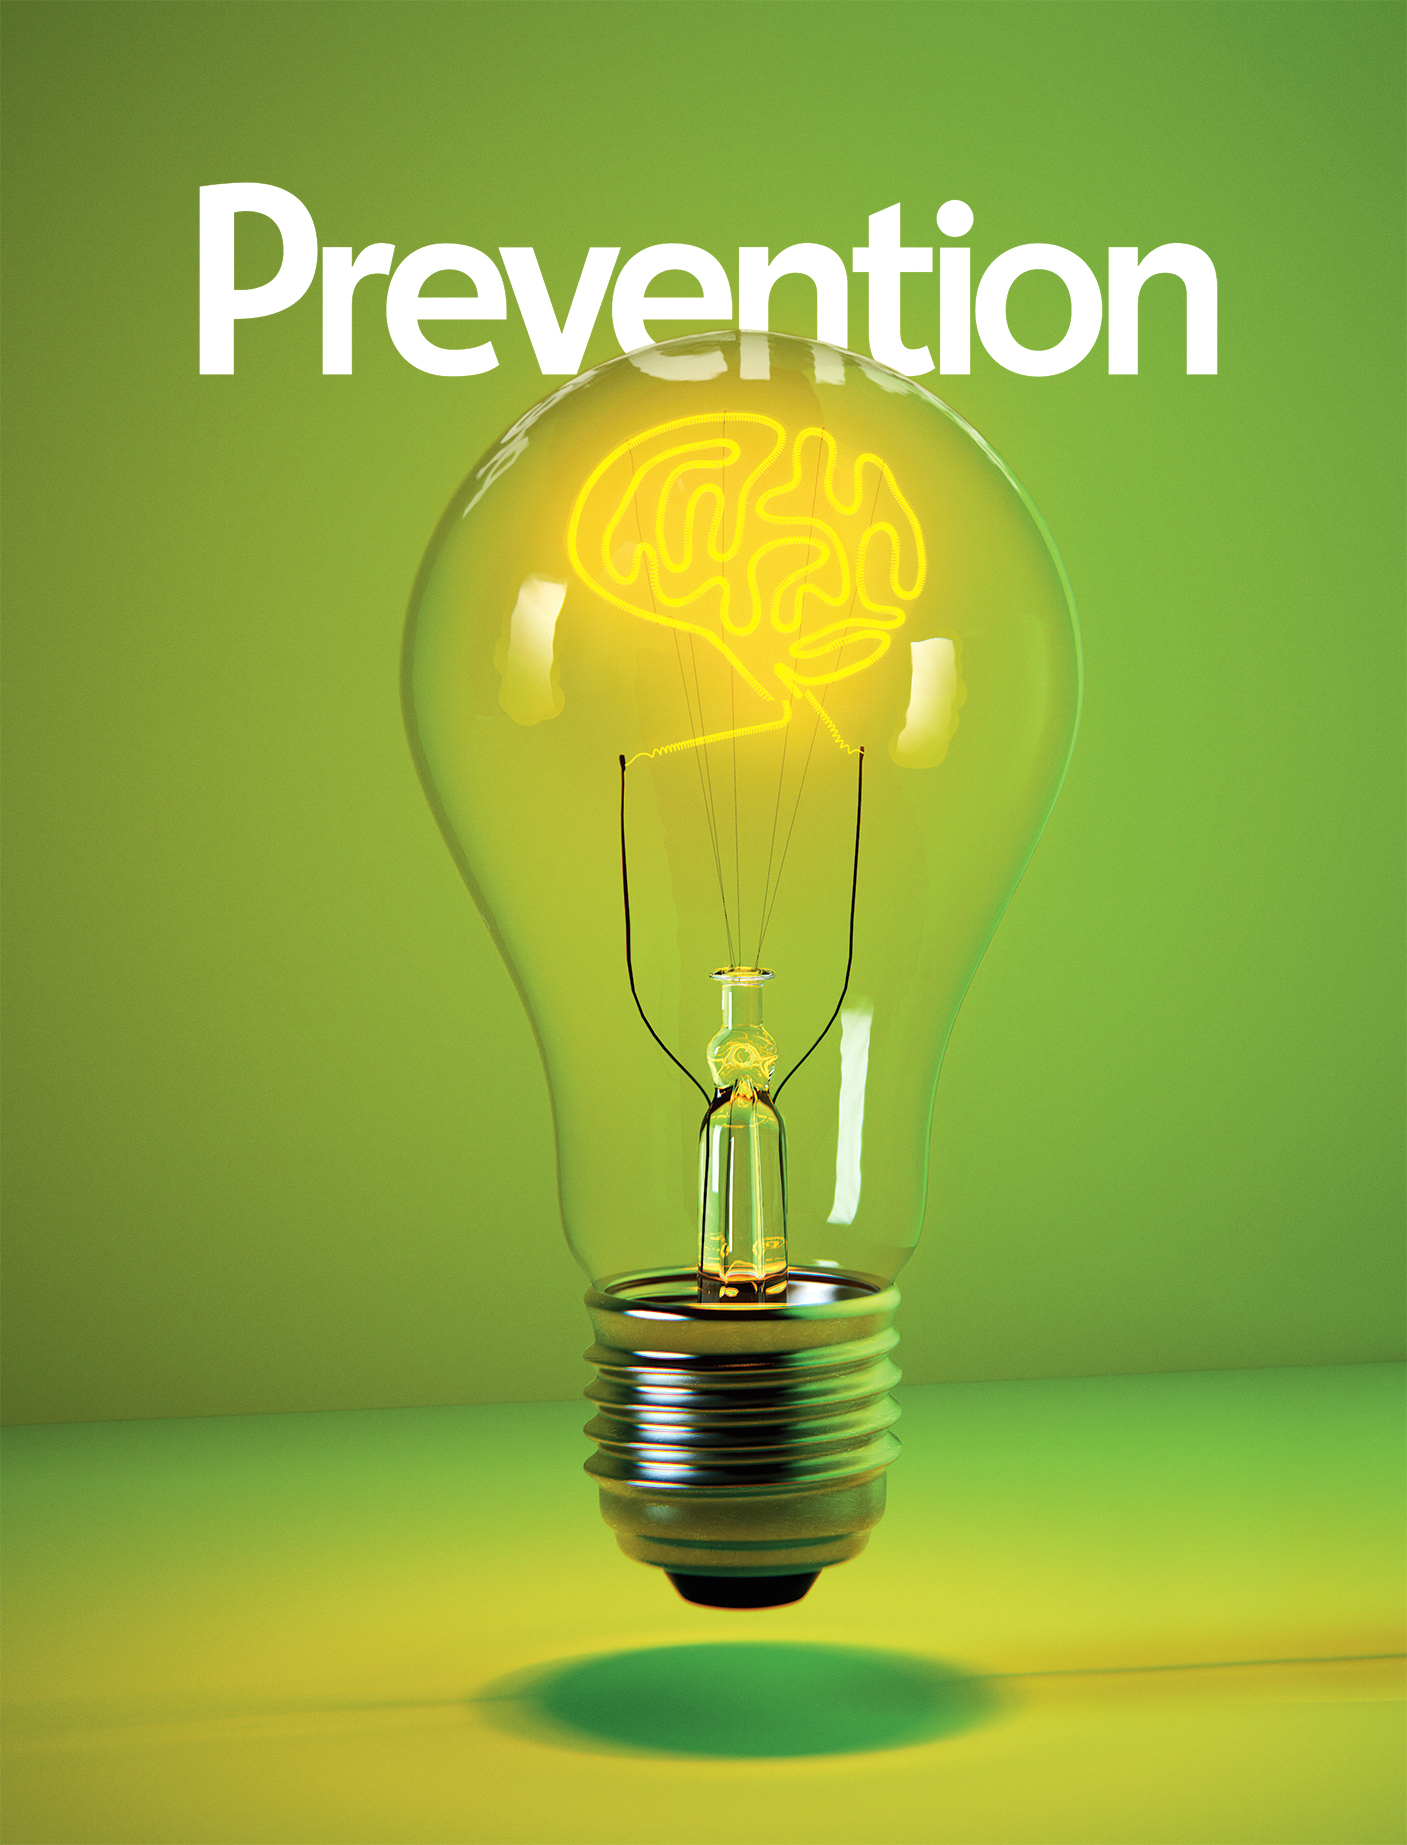 PreventionBrainLightbulb[2].jpg